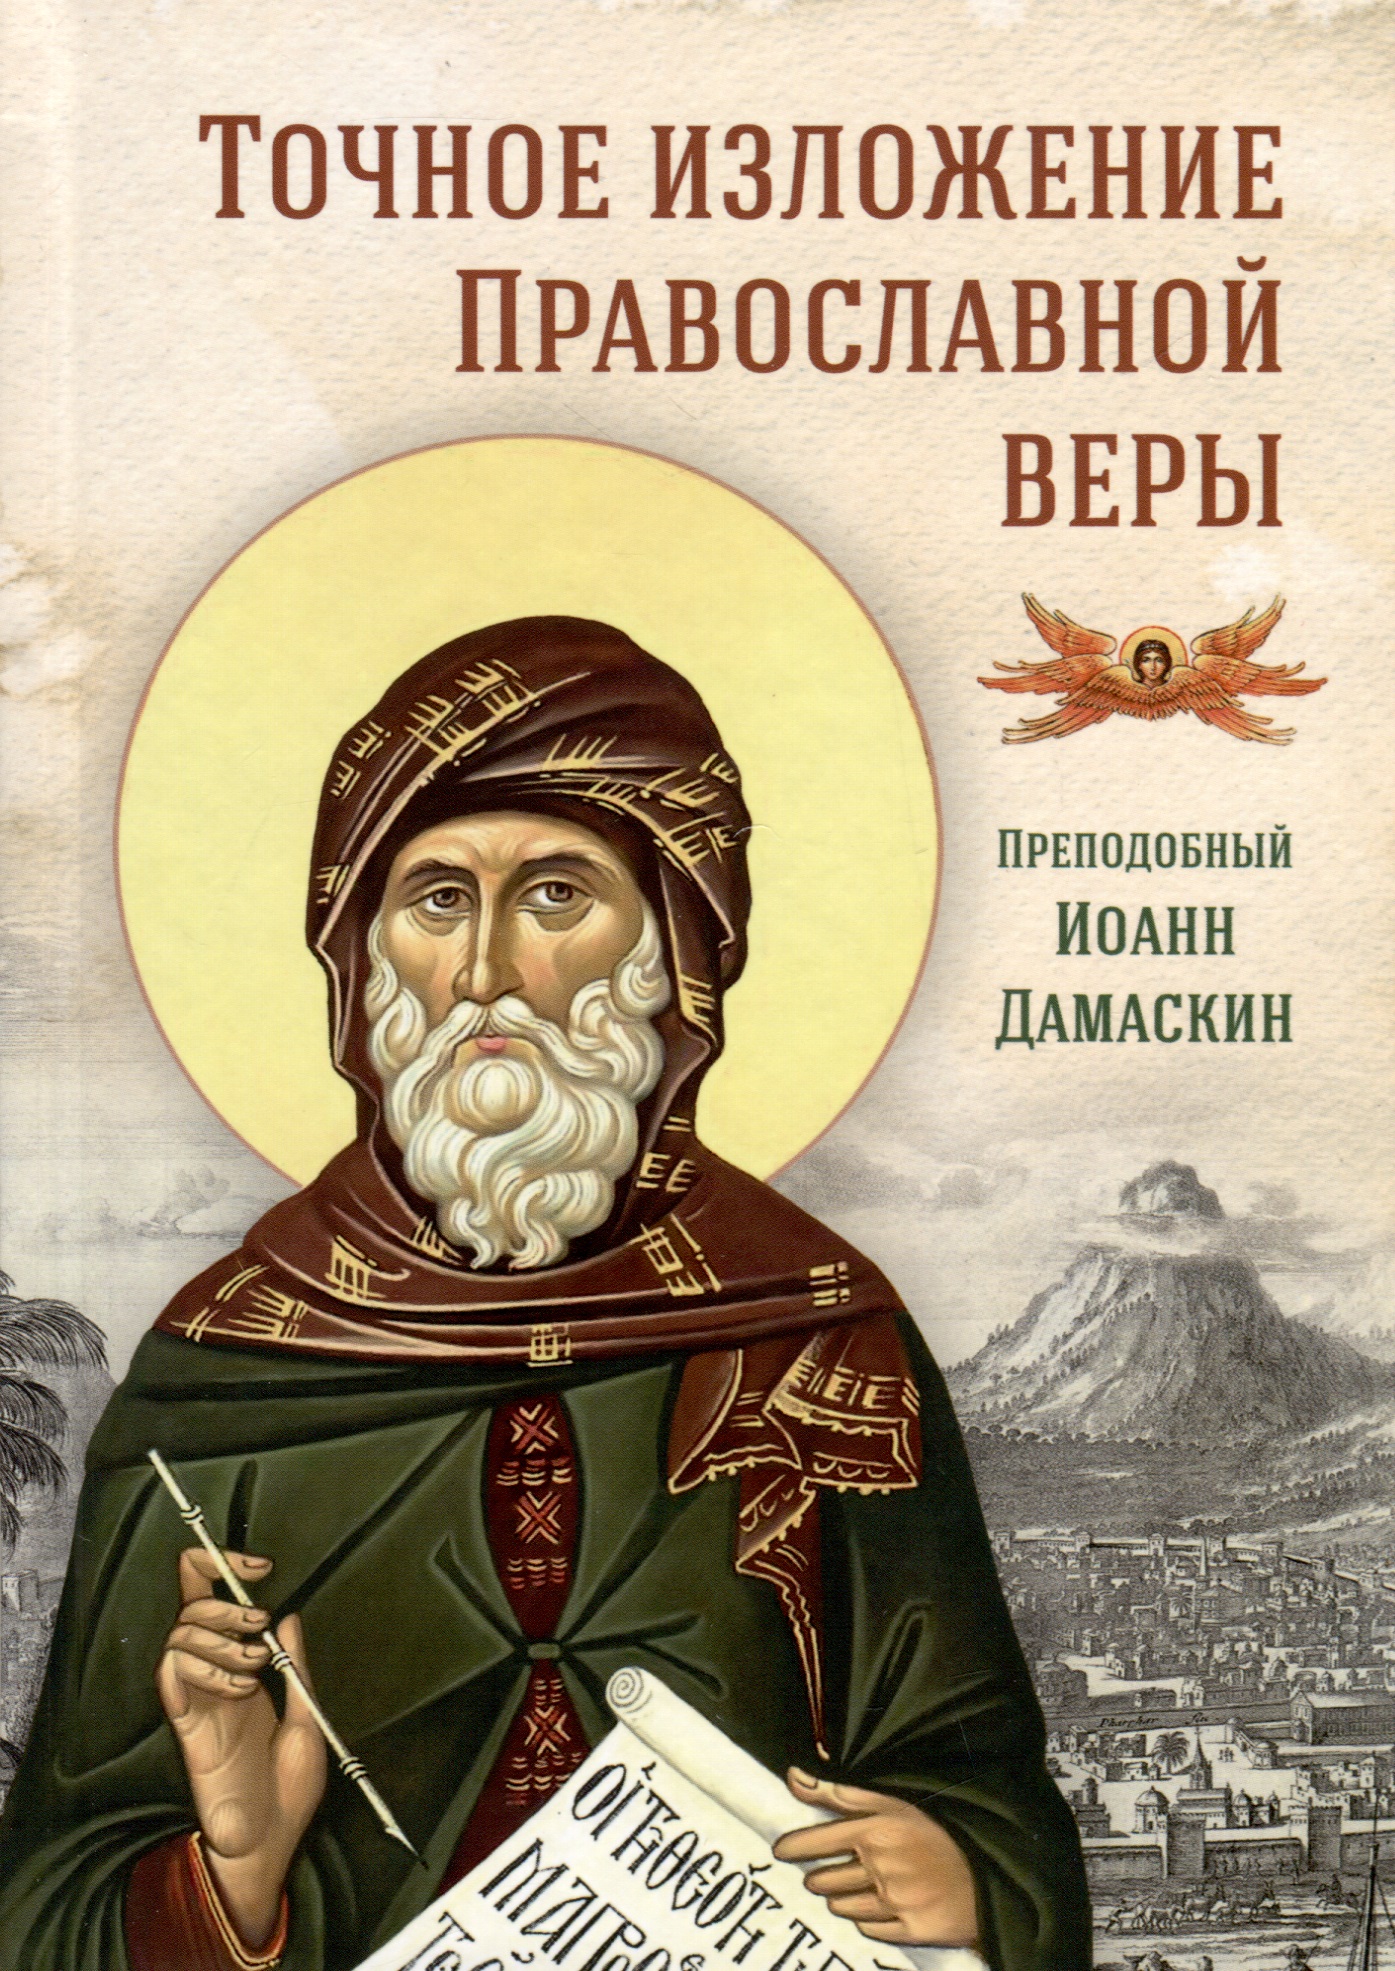 дамаскин иоанн точное изложение православной веры Дамаскин Иоанн Точное изложение Православной веры